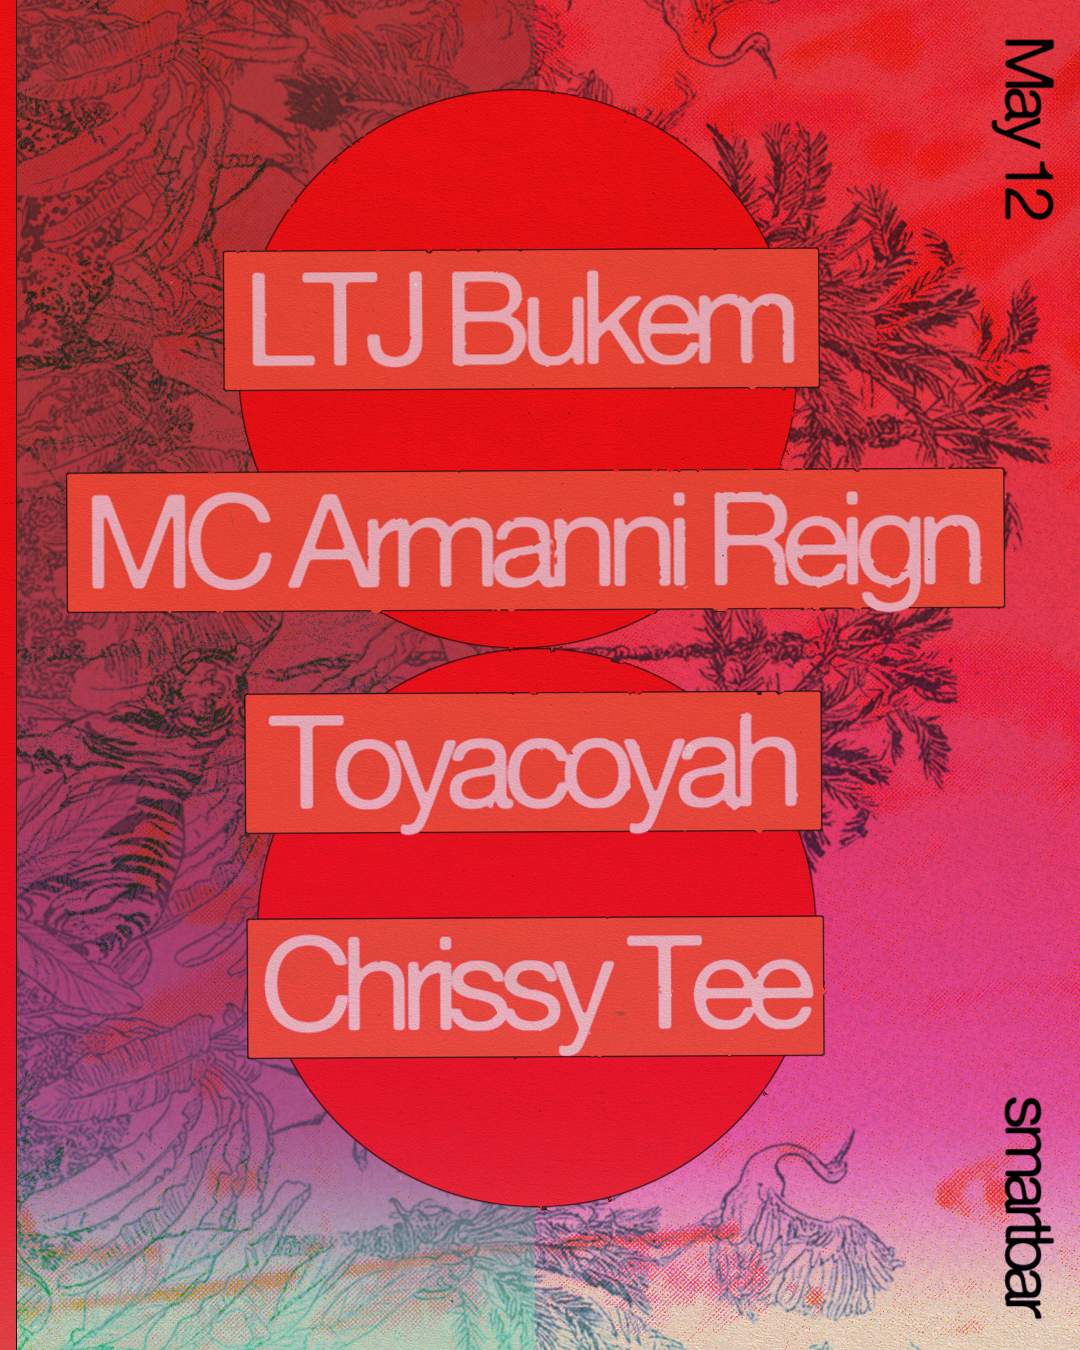 LTJ Bukem - MC Armanni Reign - Toyacoyah - Chrissy Tee - Página frontal